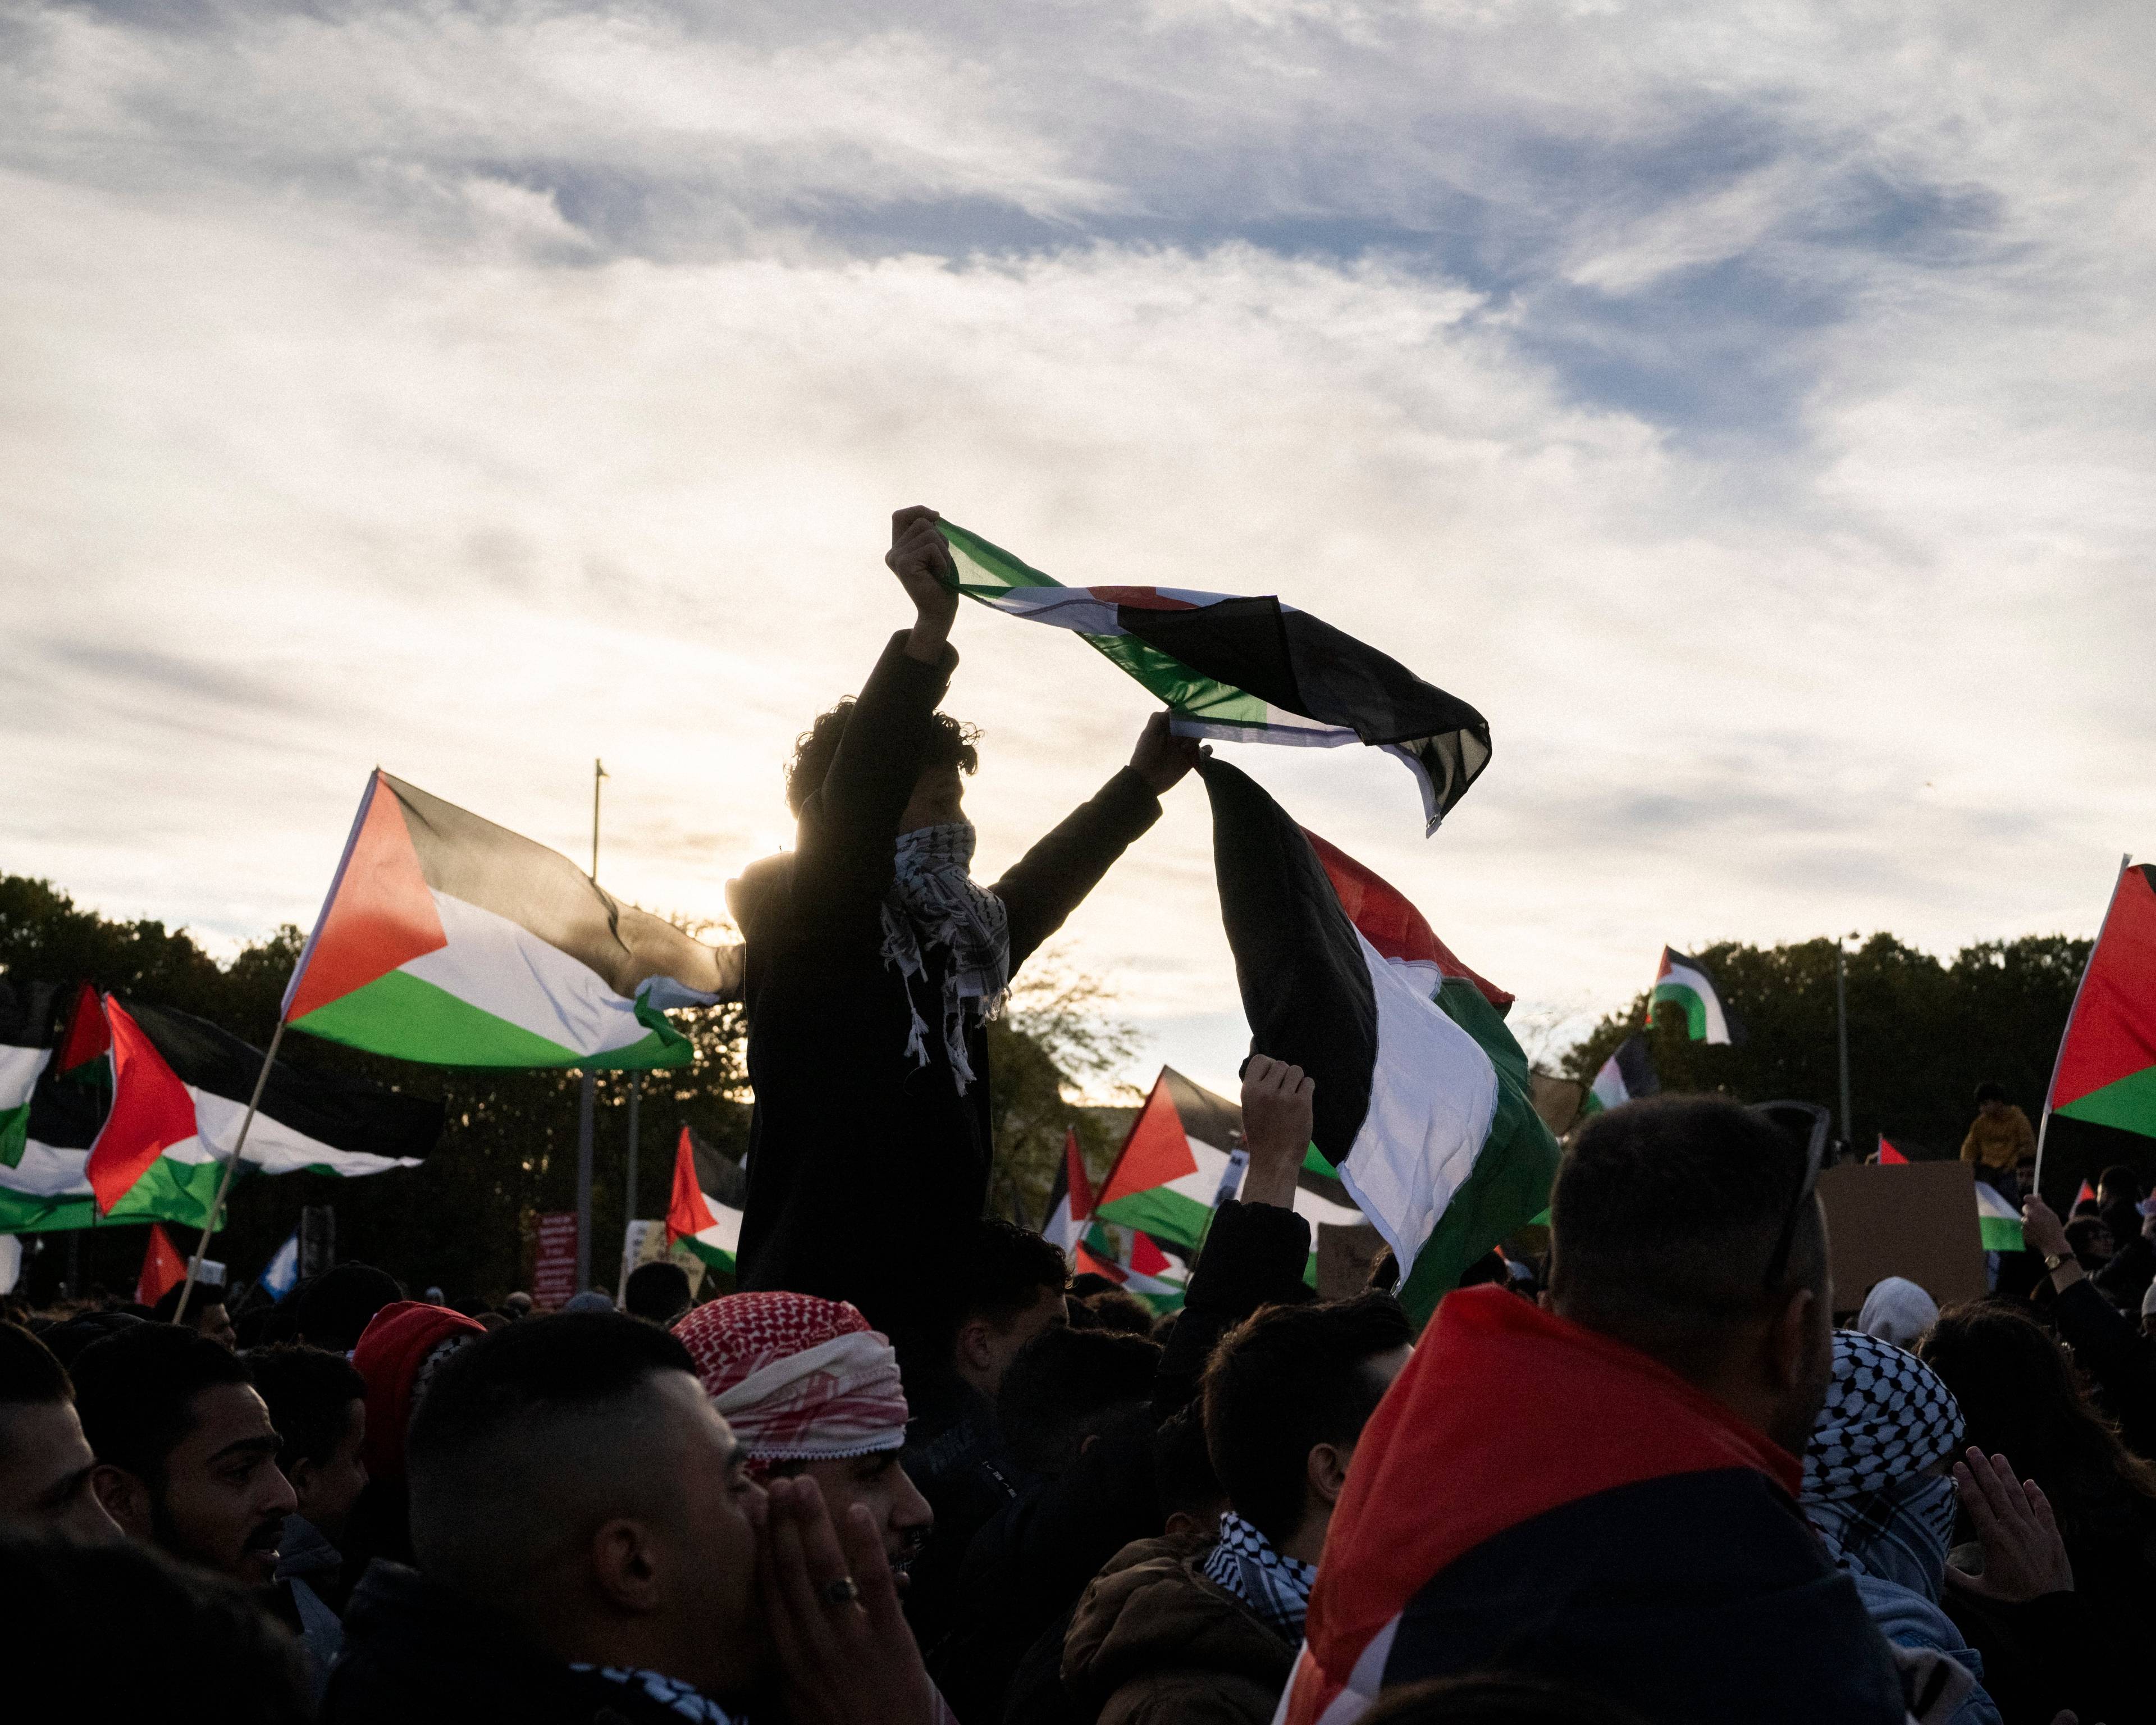 chłopak w arafatce na twarzy niesiony na ramionach demonstrantów trzyma flagę czarno-biało-zielono-czerwoną powiewającą na wietrze